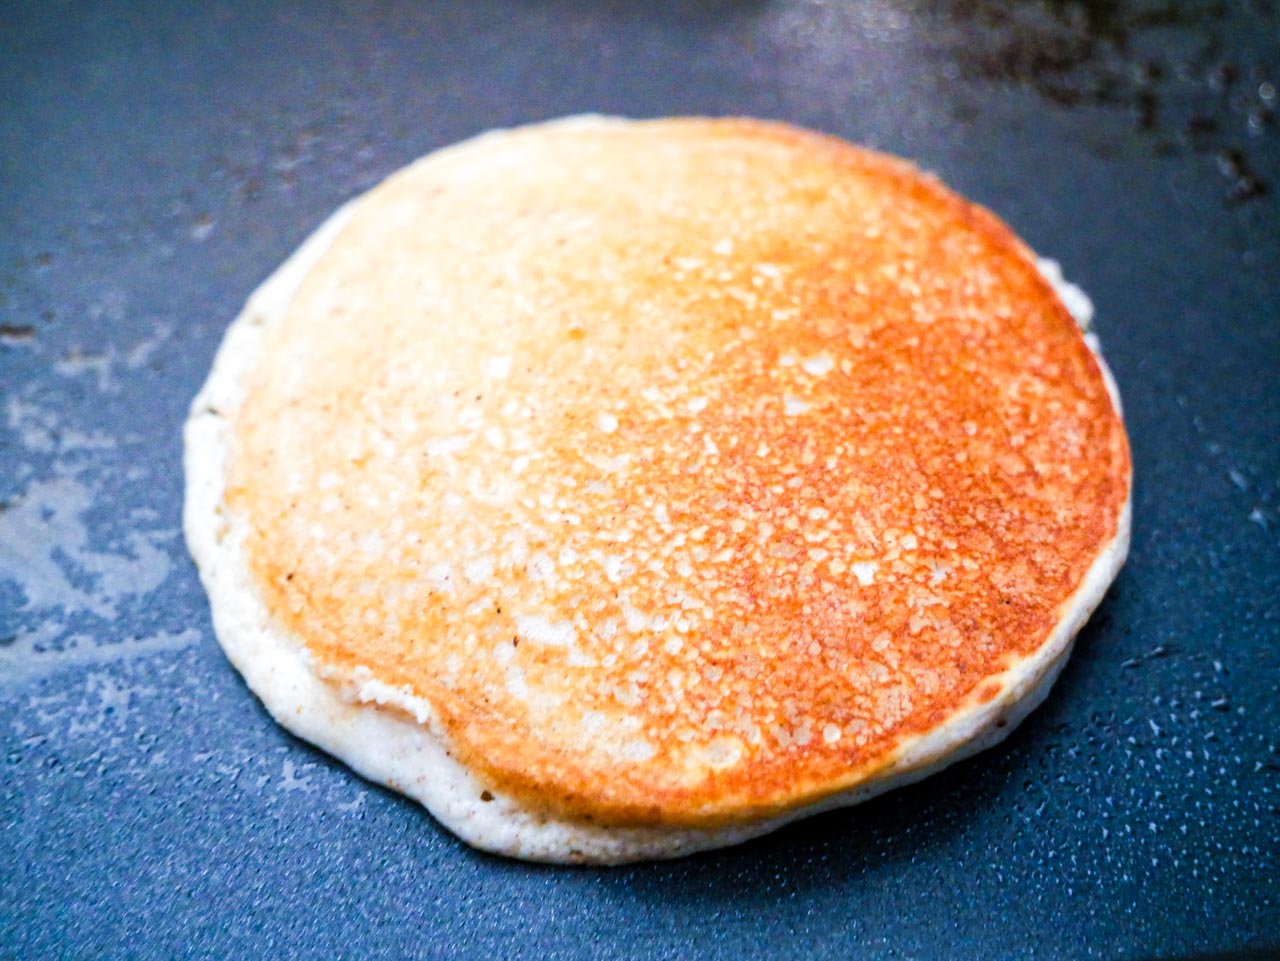 Single tiger nut flour pancakes on a black griddle golden brown.